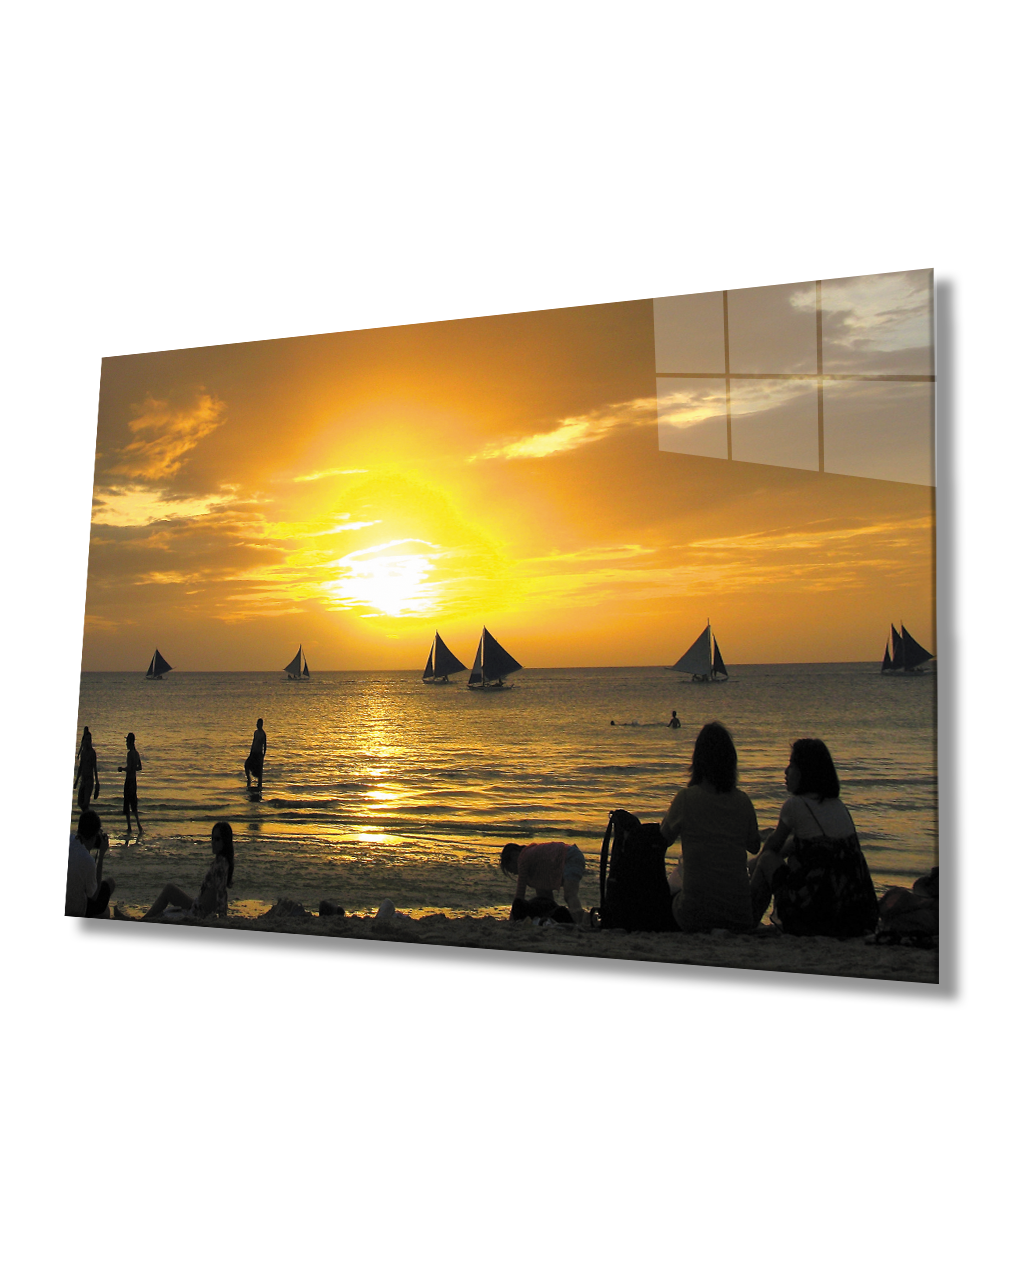 Gün Batımı Deniz Yelken İnsanlar Cam Tablo  4mm Dayanıklı Temperli Cam Sunset Sea Sailing People Glass Table 4mm Durable Tempered Glass